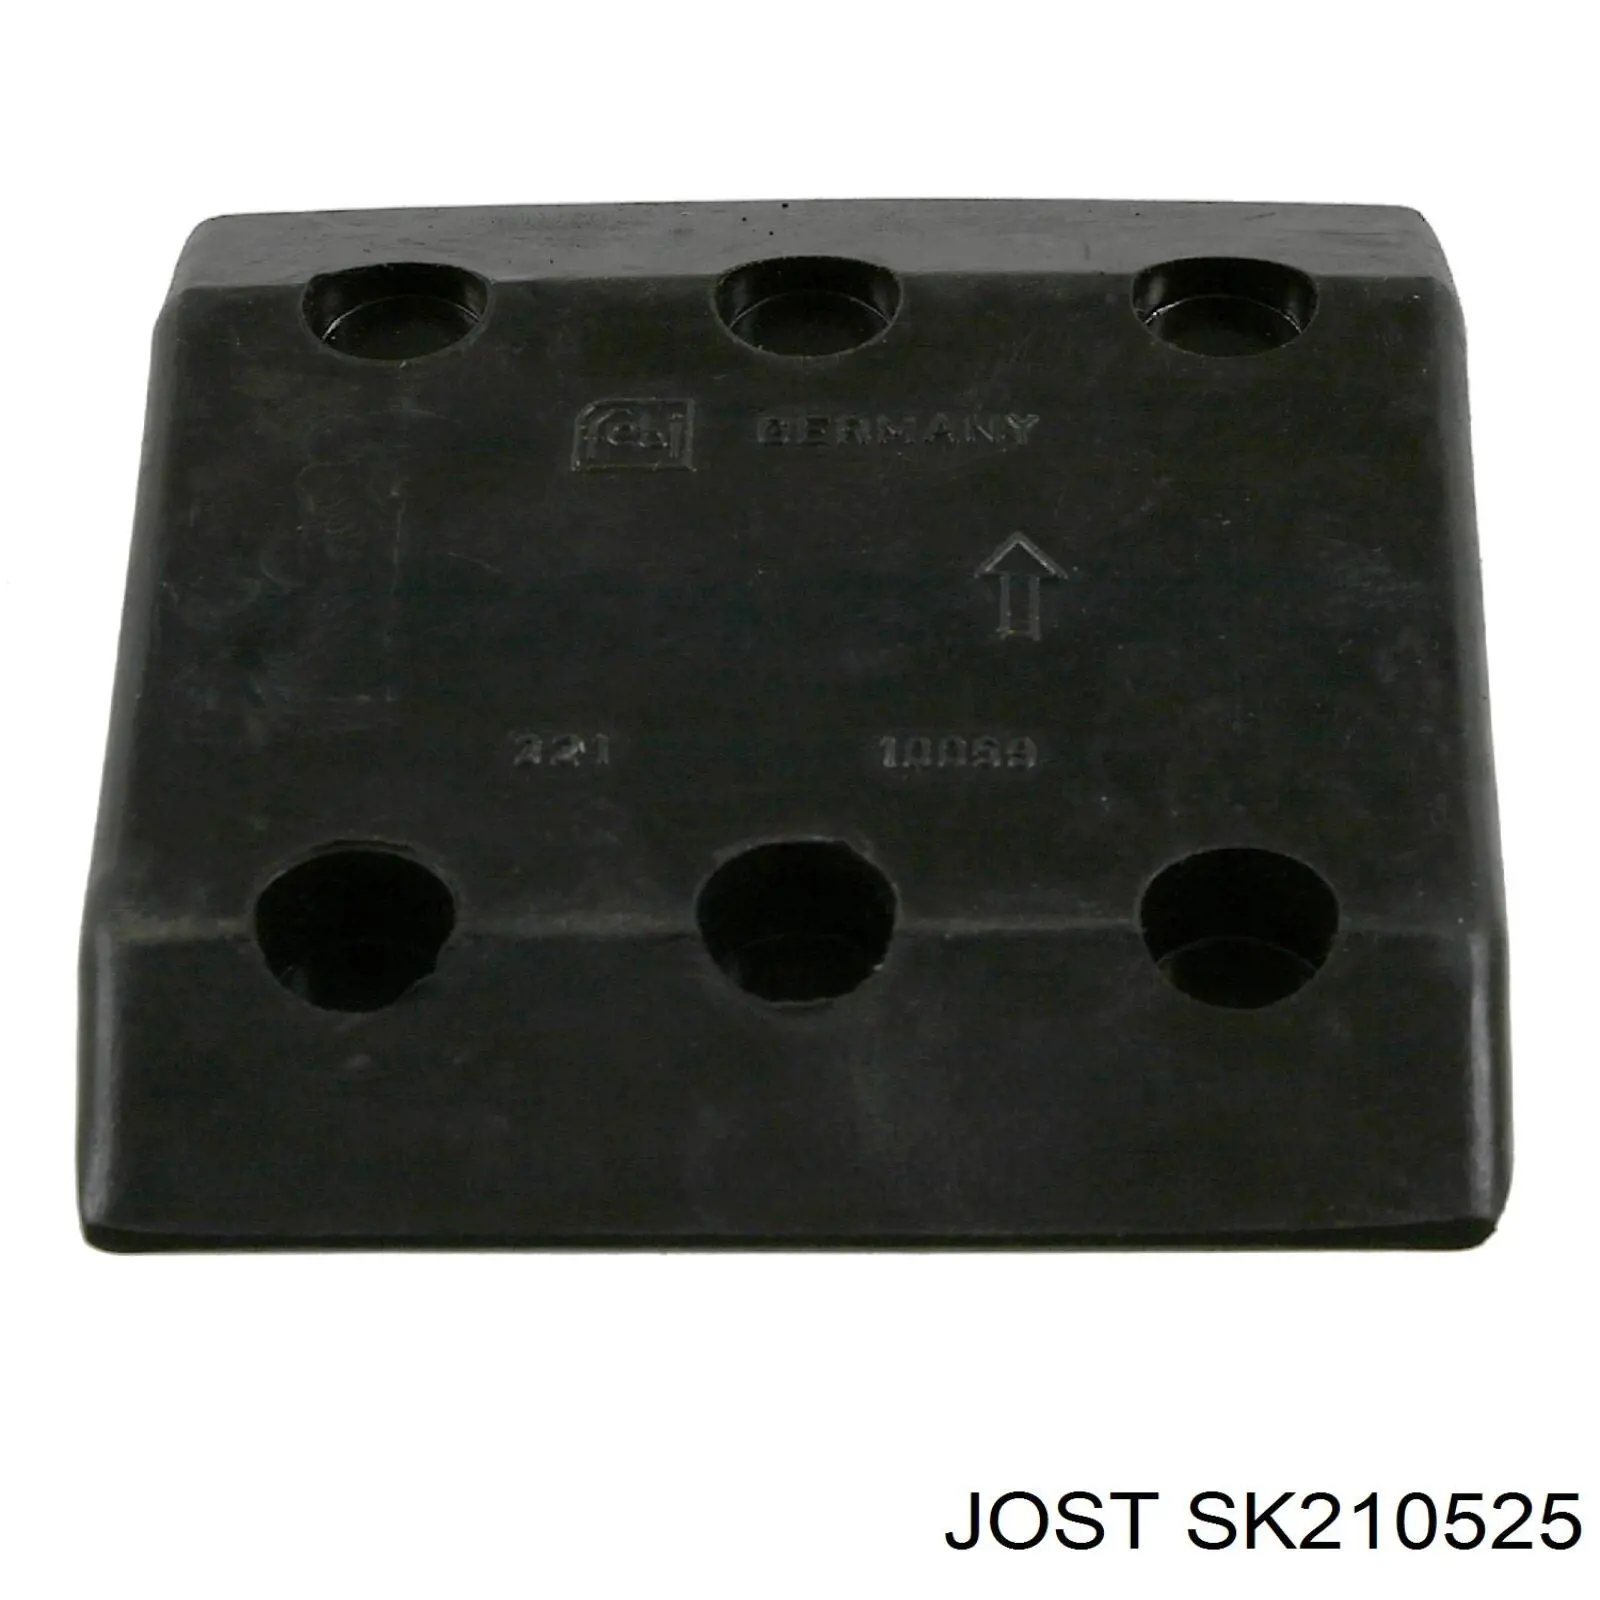 SK210525 Jost ремкомплект замка седла прицепного устройства